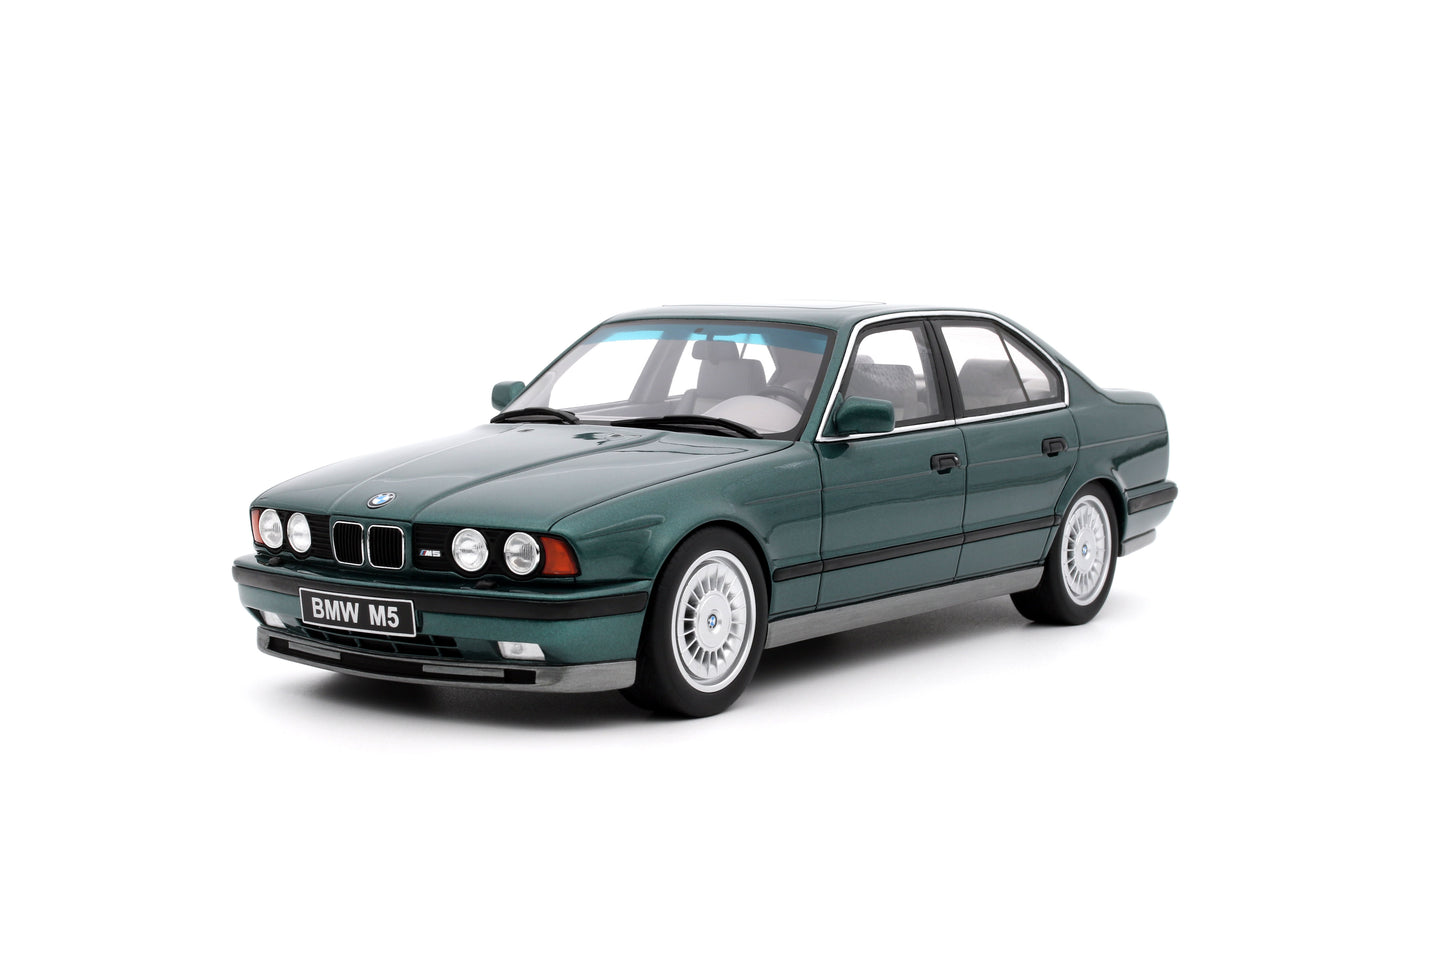 1:18 BMW M5 E34, 1991, grøn, Ottomobile, OT968, lukket model, limited